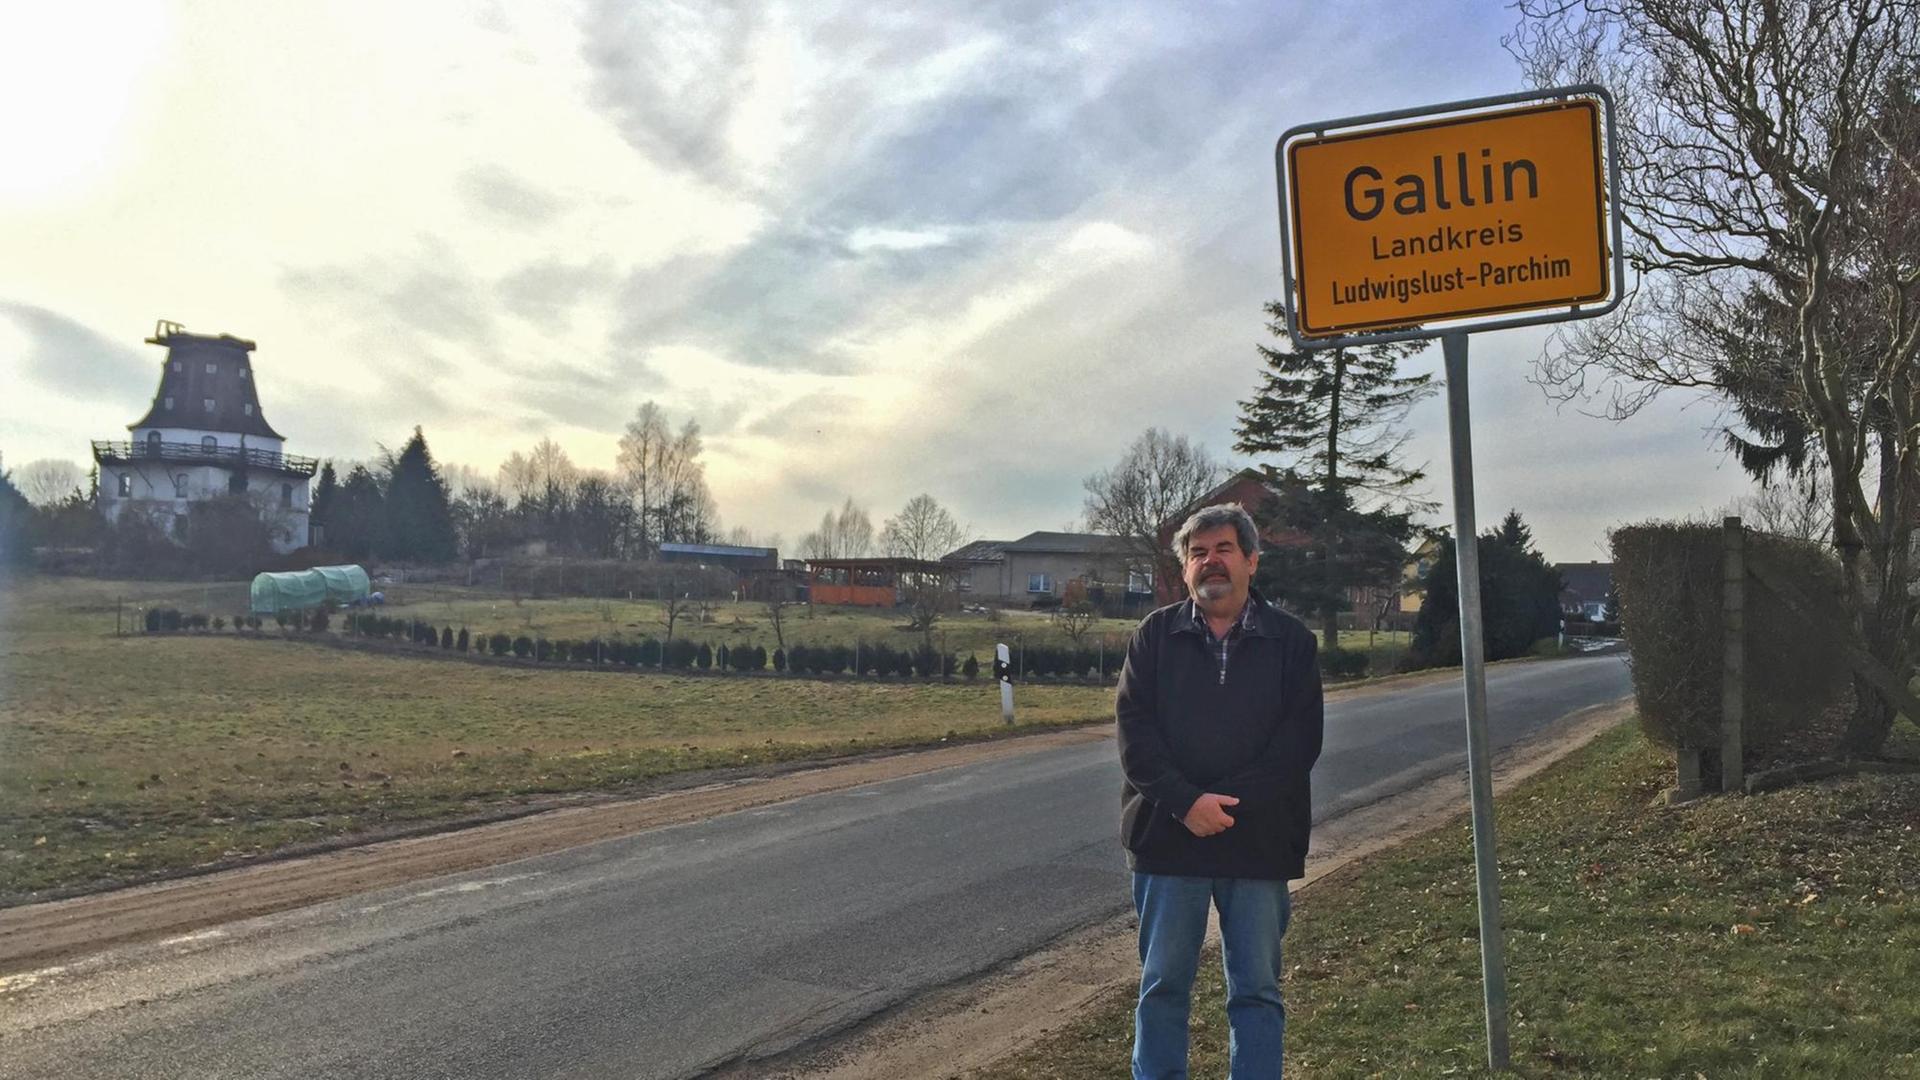 Holger Klukas, Bürgermeister der Gemeinde Gallin-Kuppentin in Mecklenburg-Vorpommern, vor dem Ortsschild "Gallin"